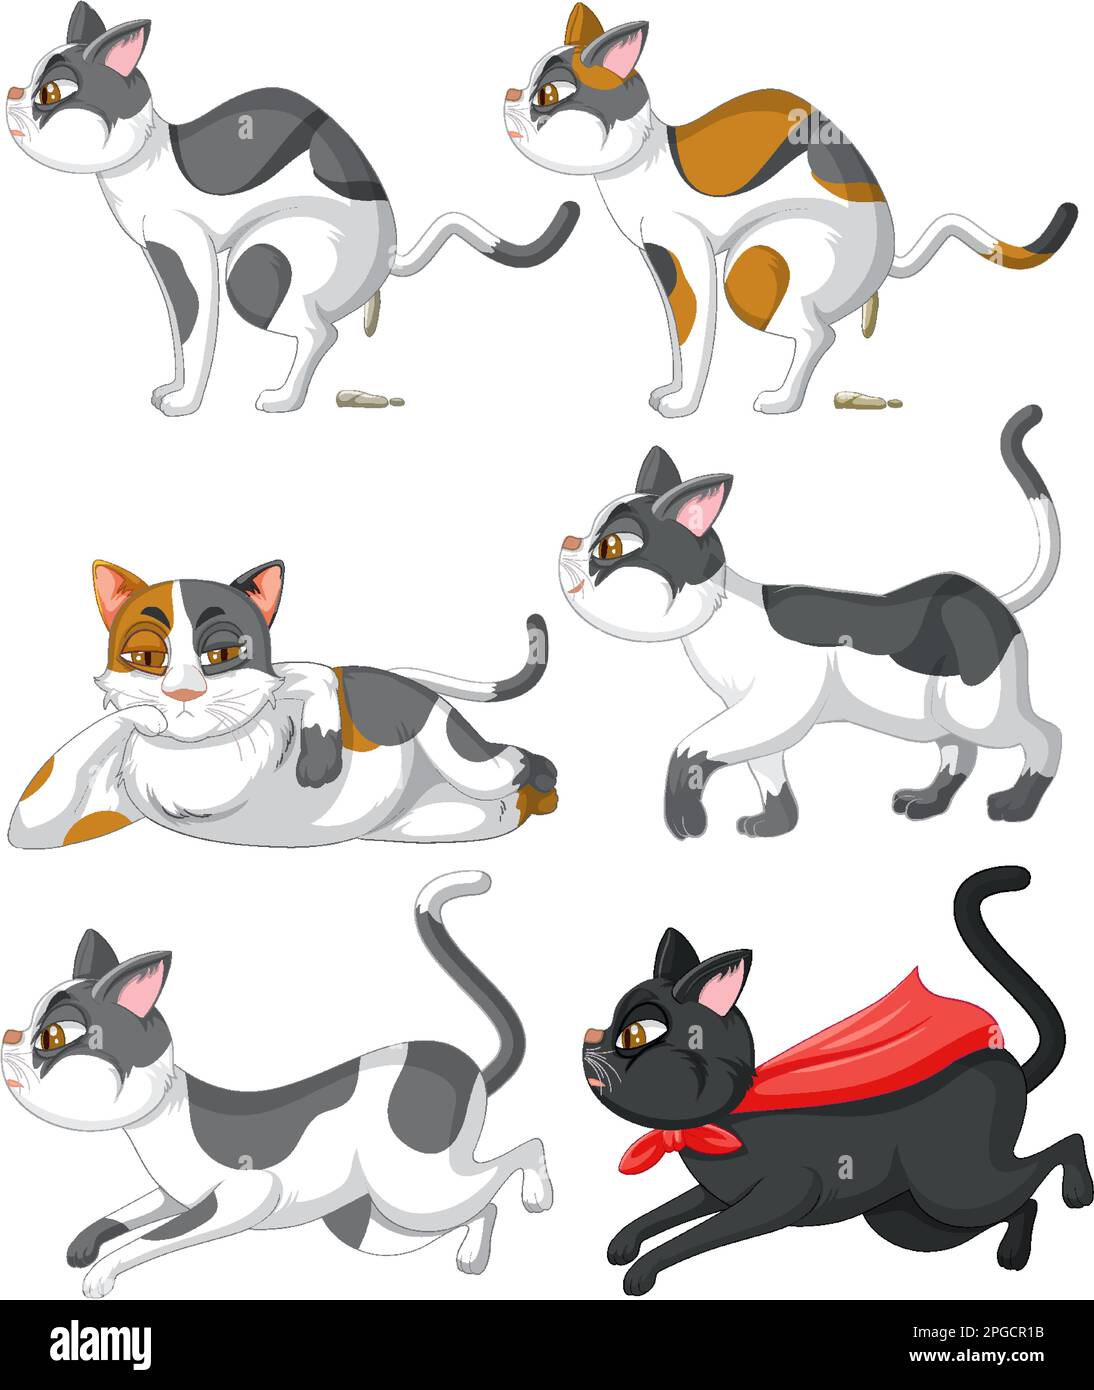 No cat feces - Stock Illustration [6712011] - PIXTA